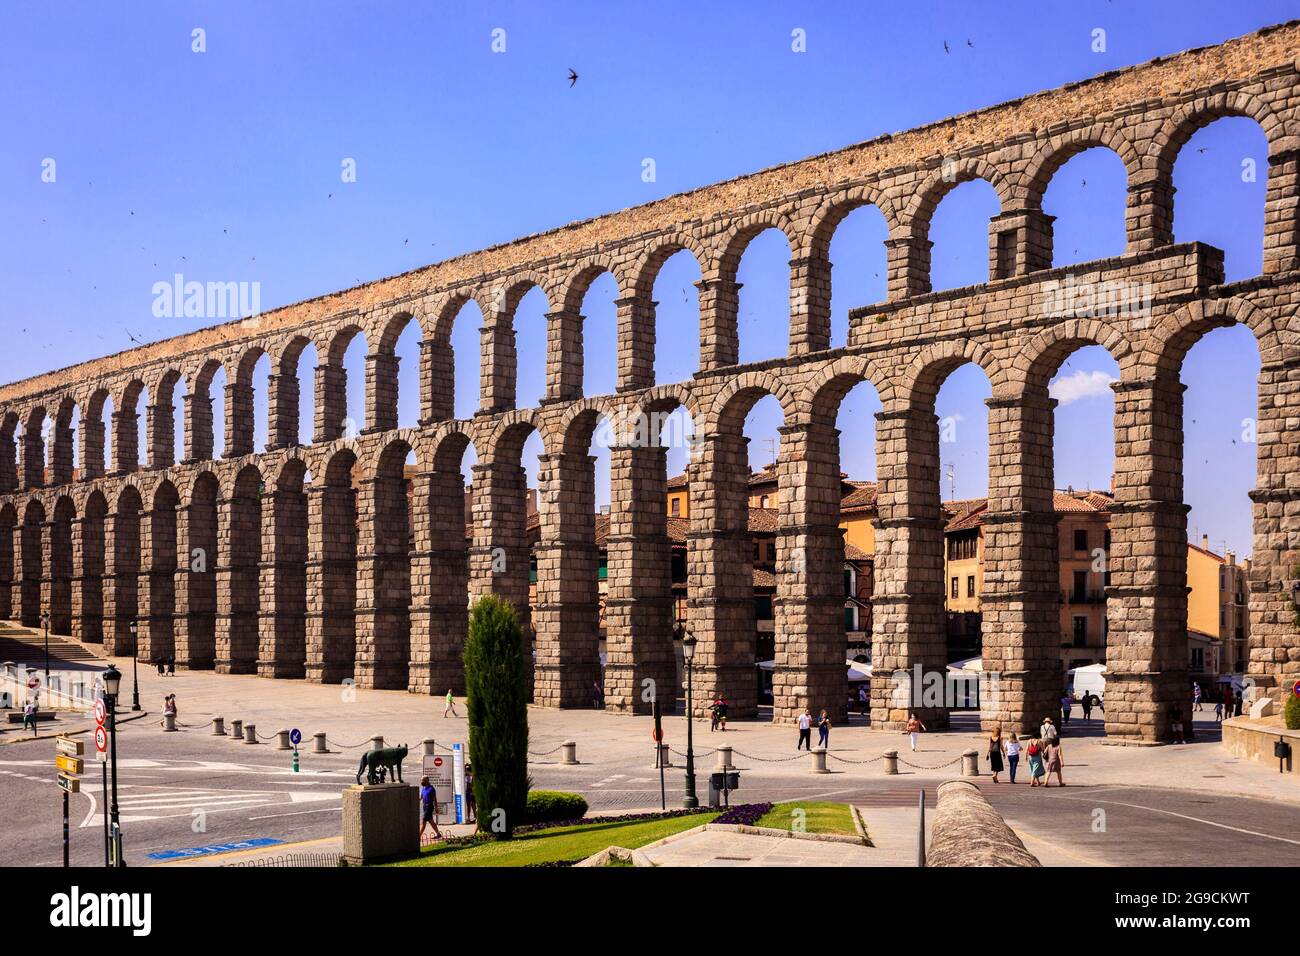 L'acquedotto di Segovia, un monumento romano nominato Patrimonio dell'Umanità dall'UNESCO. Spagna. Foto Stock